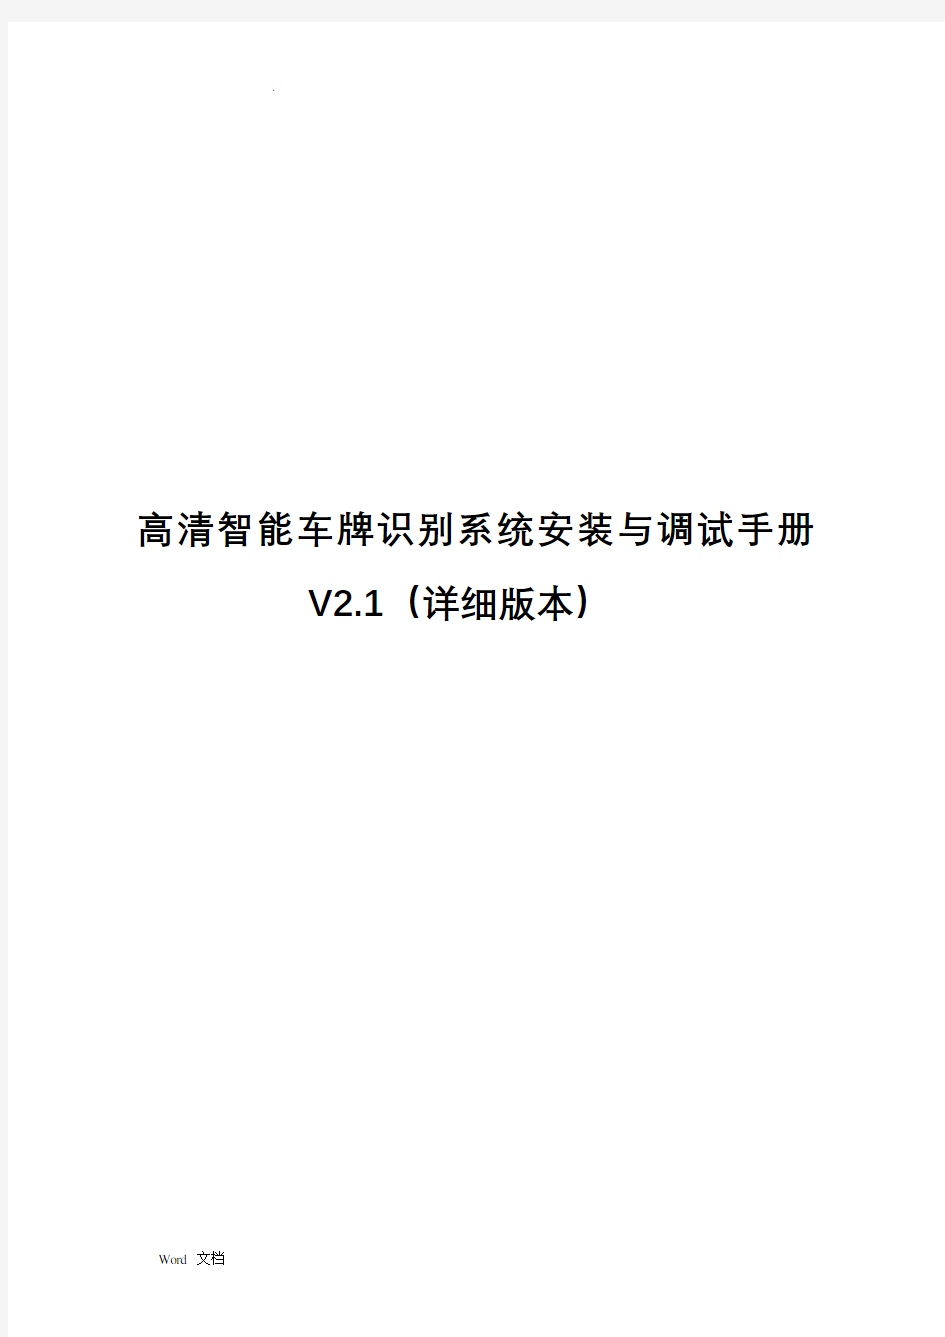 高清车牌识别系统安装与调试手册V2.1(详细版本)